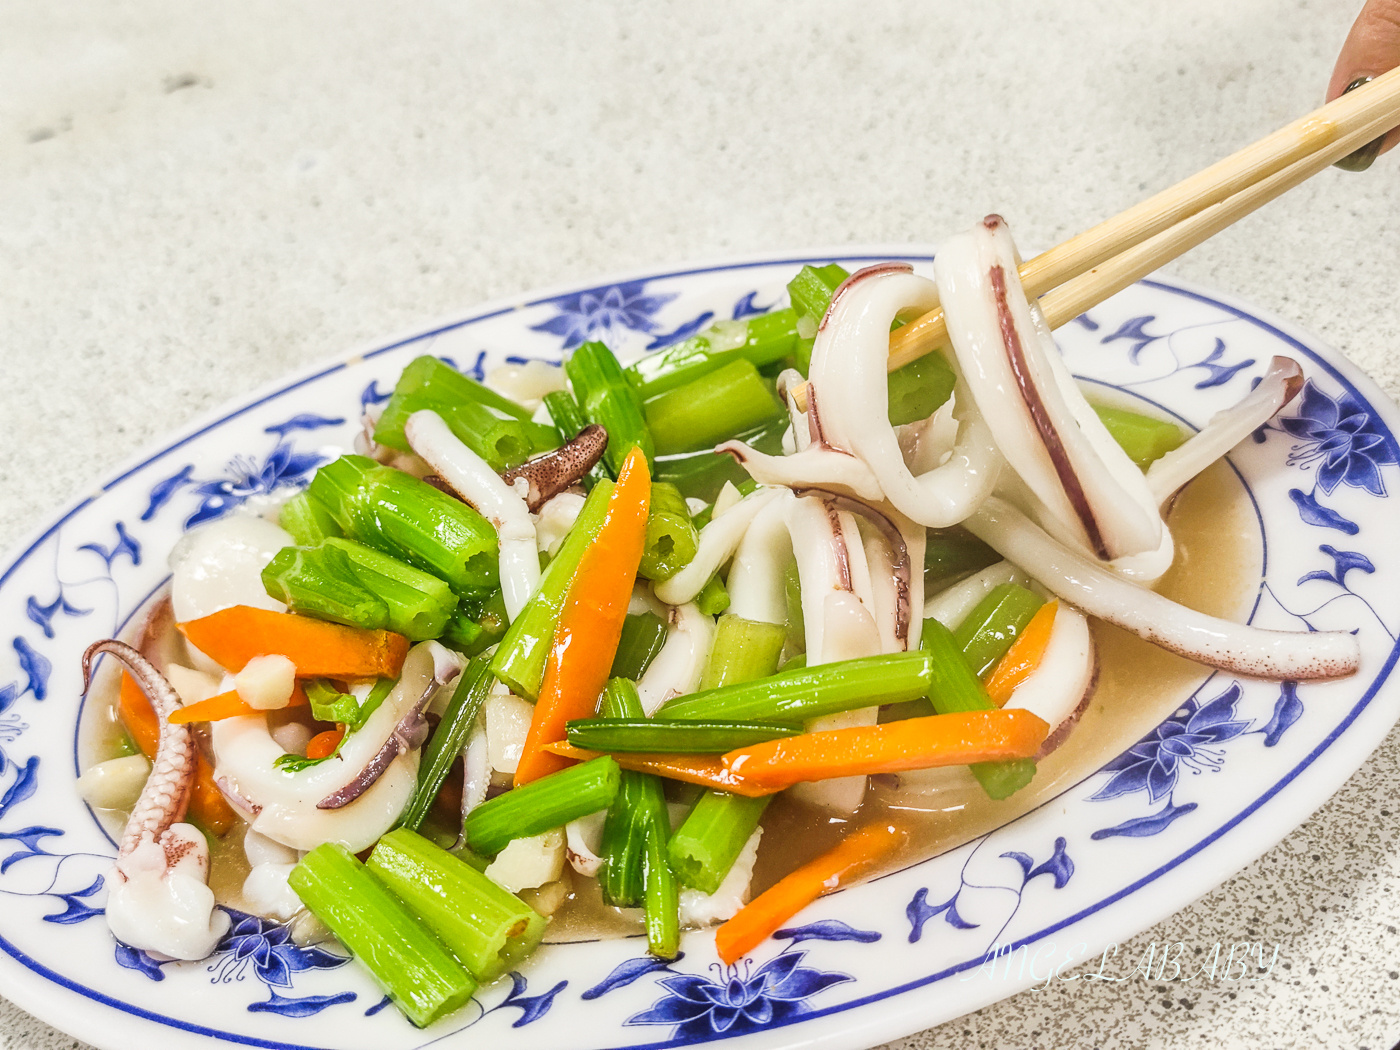 新竹最好吃的鵝肉『品味鵝肉海鮮快炒』價格菜單 @梅格(Angelababy)享樂日記